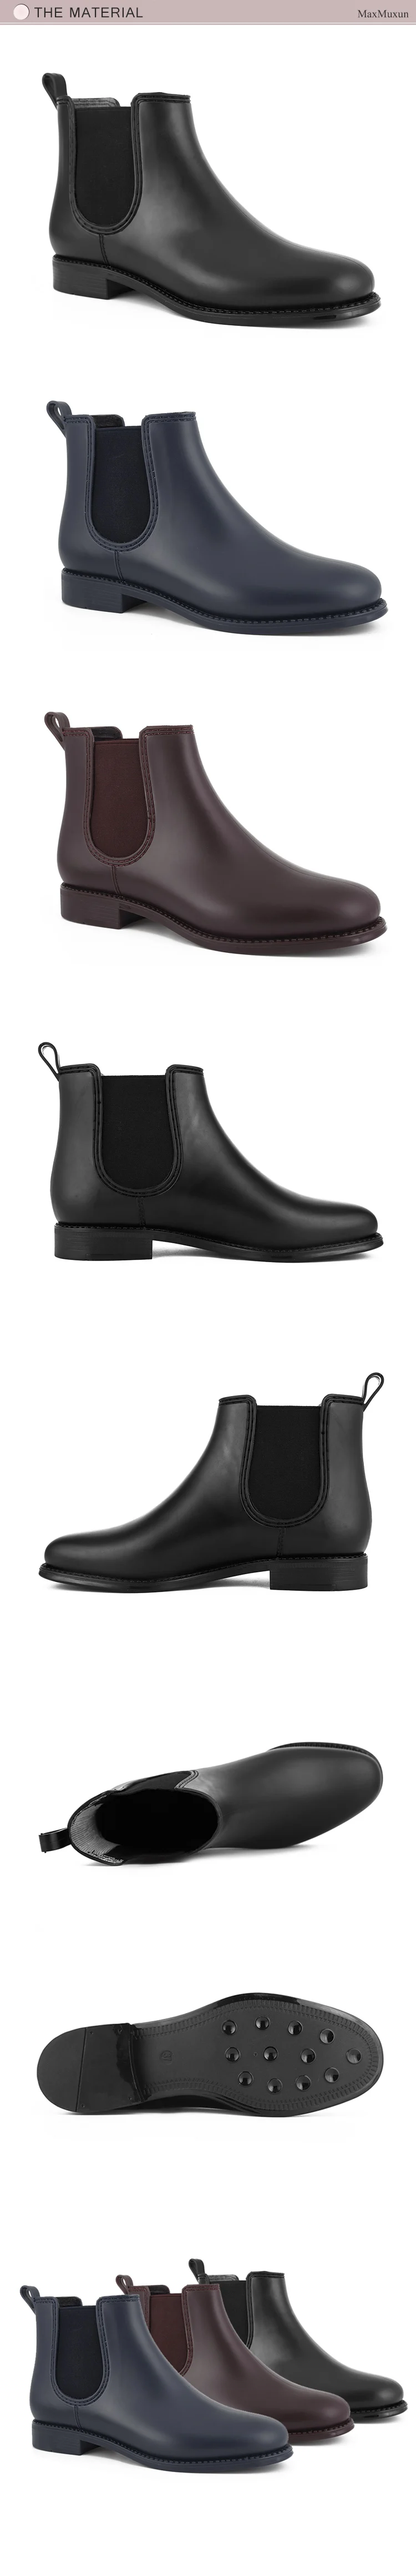 MaxMuxun/непромокаемые сапоги; женские водонепроницаемые резиновые ботильоны на низком каблуке без застежки; повседневные резиновые сапоги на платформе; женская обувь